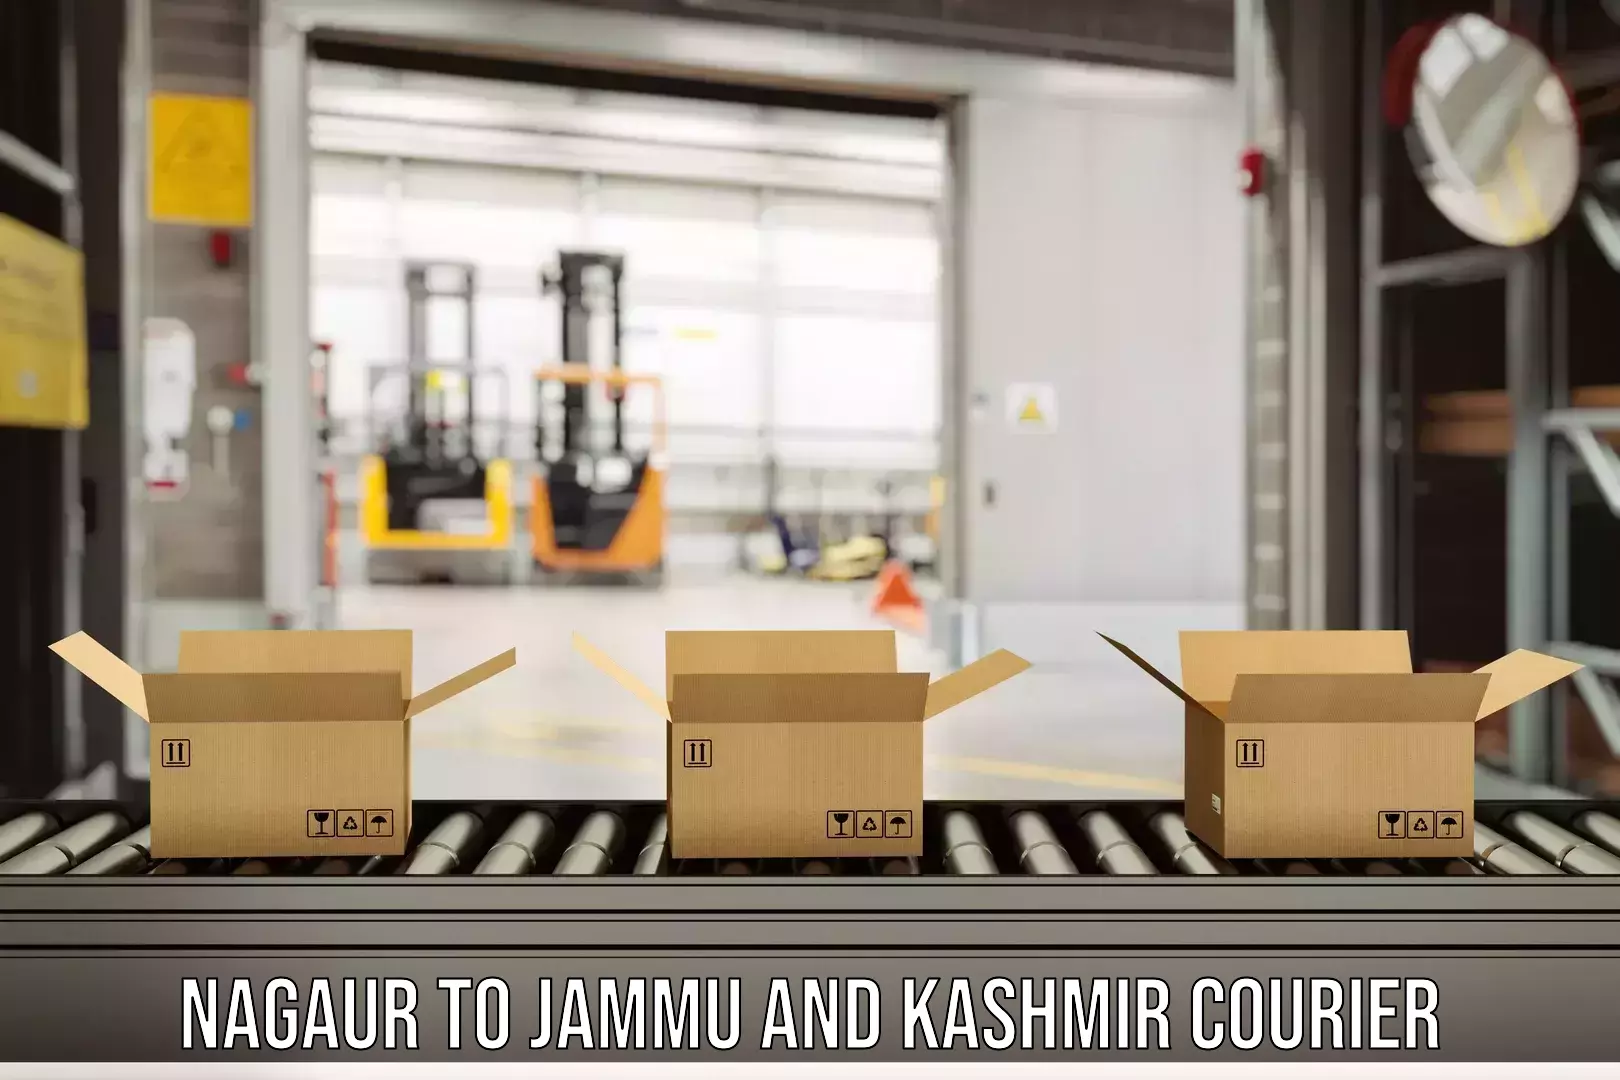 Express logistics service Nagaur to Jammu and Kashmir